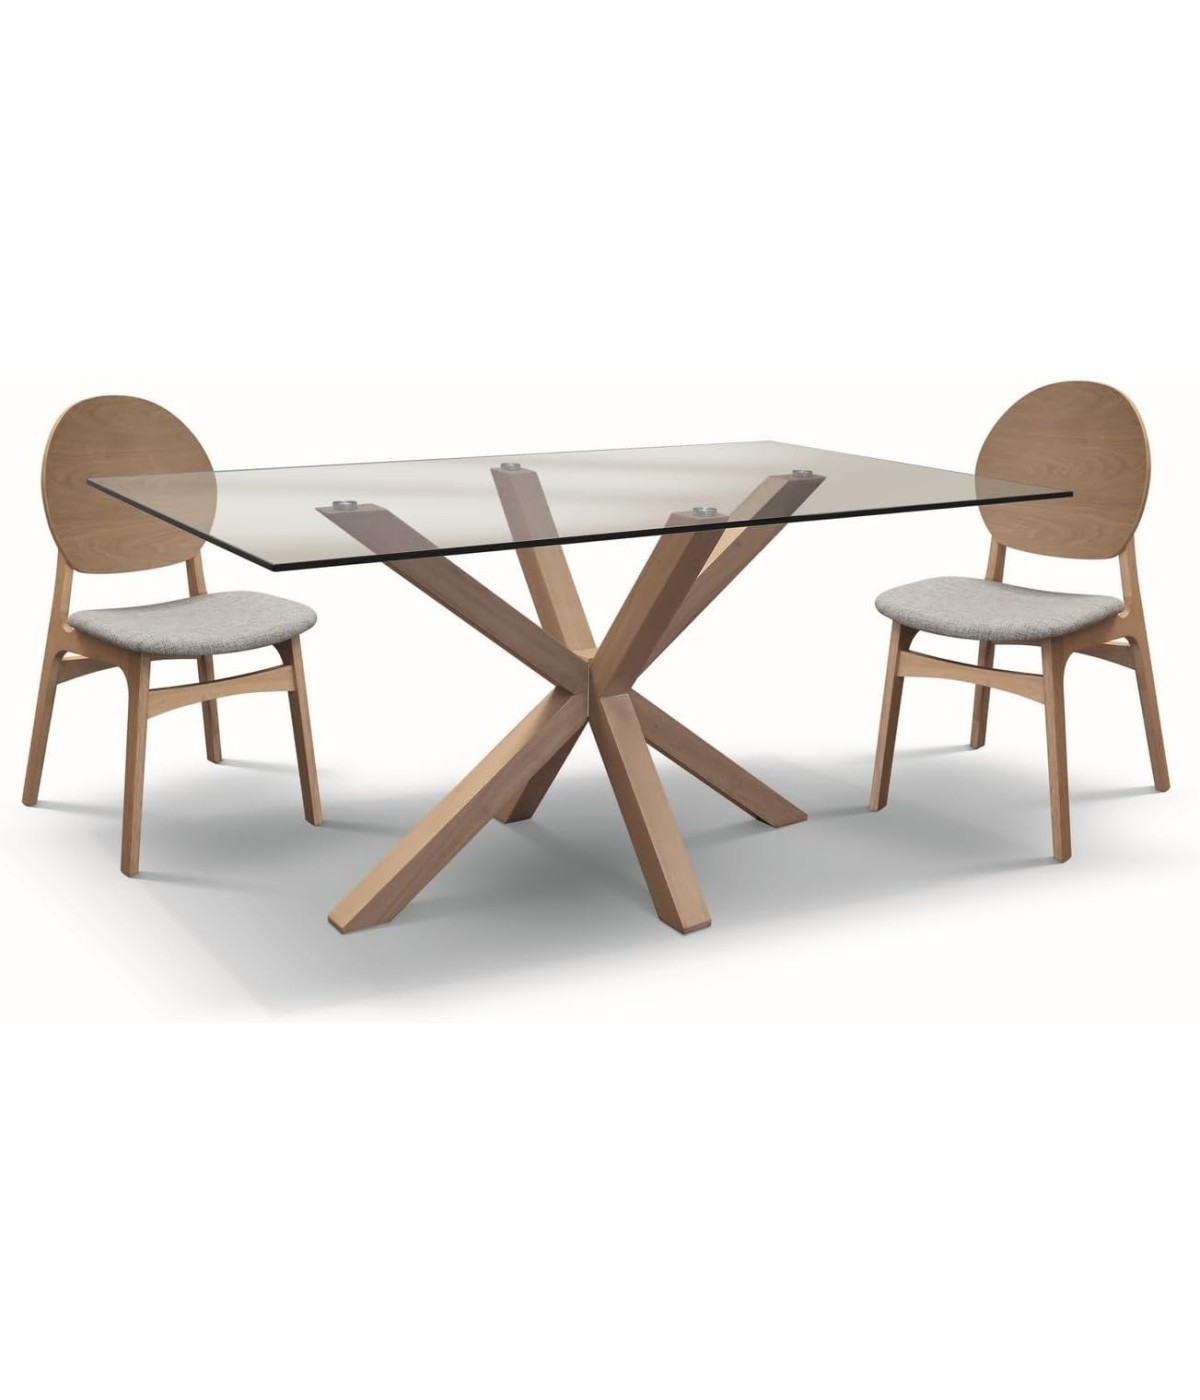 MOBILI 2G - Set tavolo moderno legno e vetro con 4 sedie imbottite vista frontale tavolo